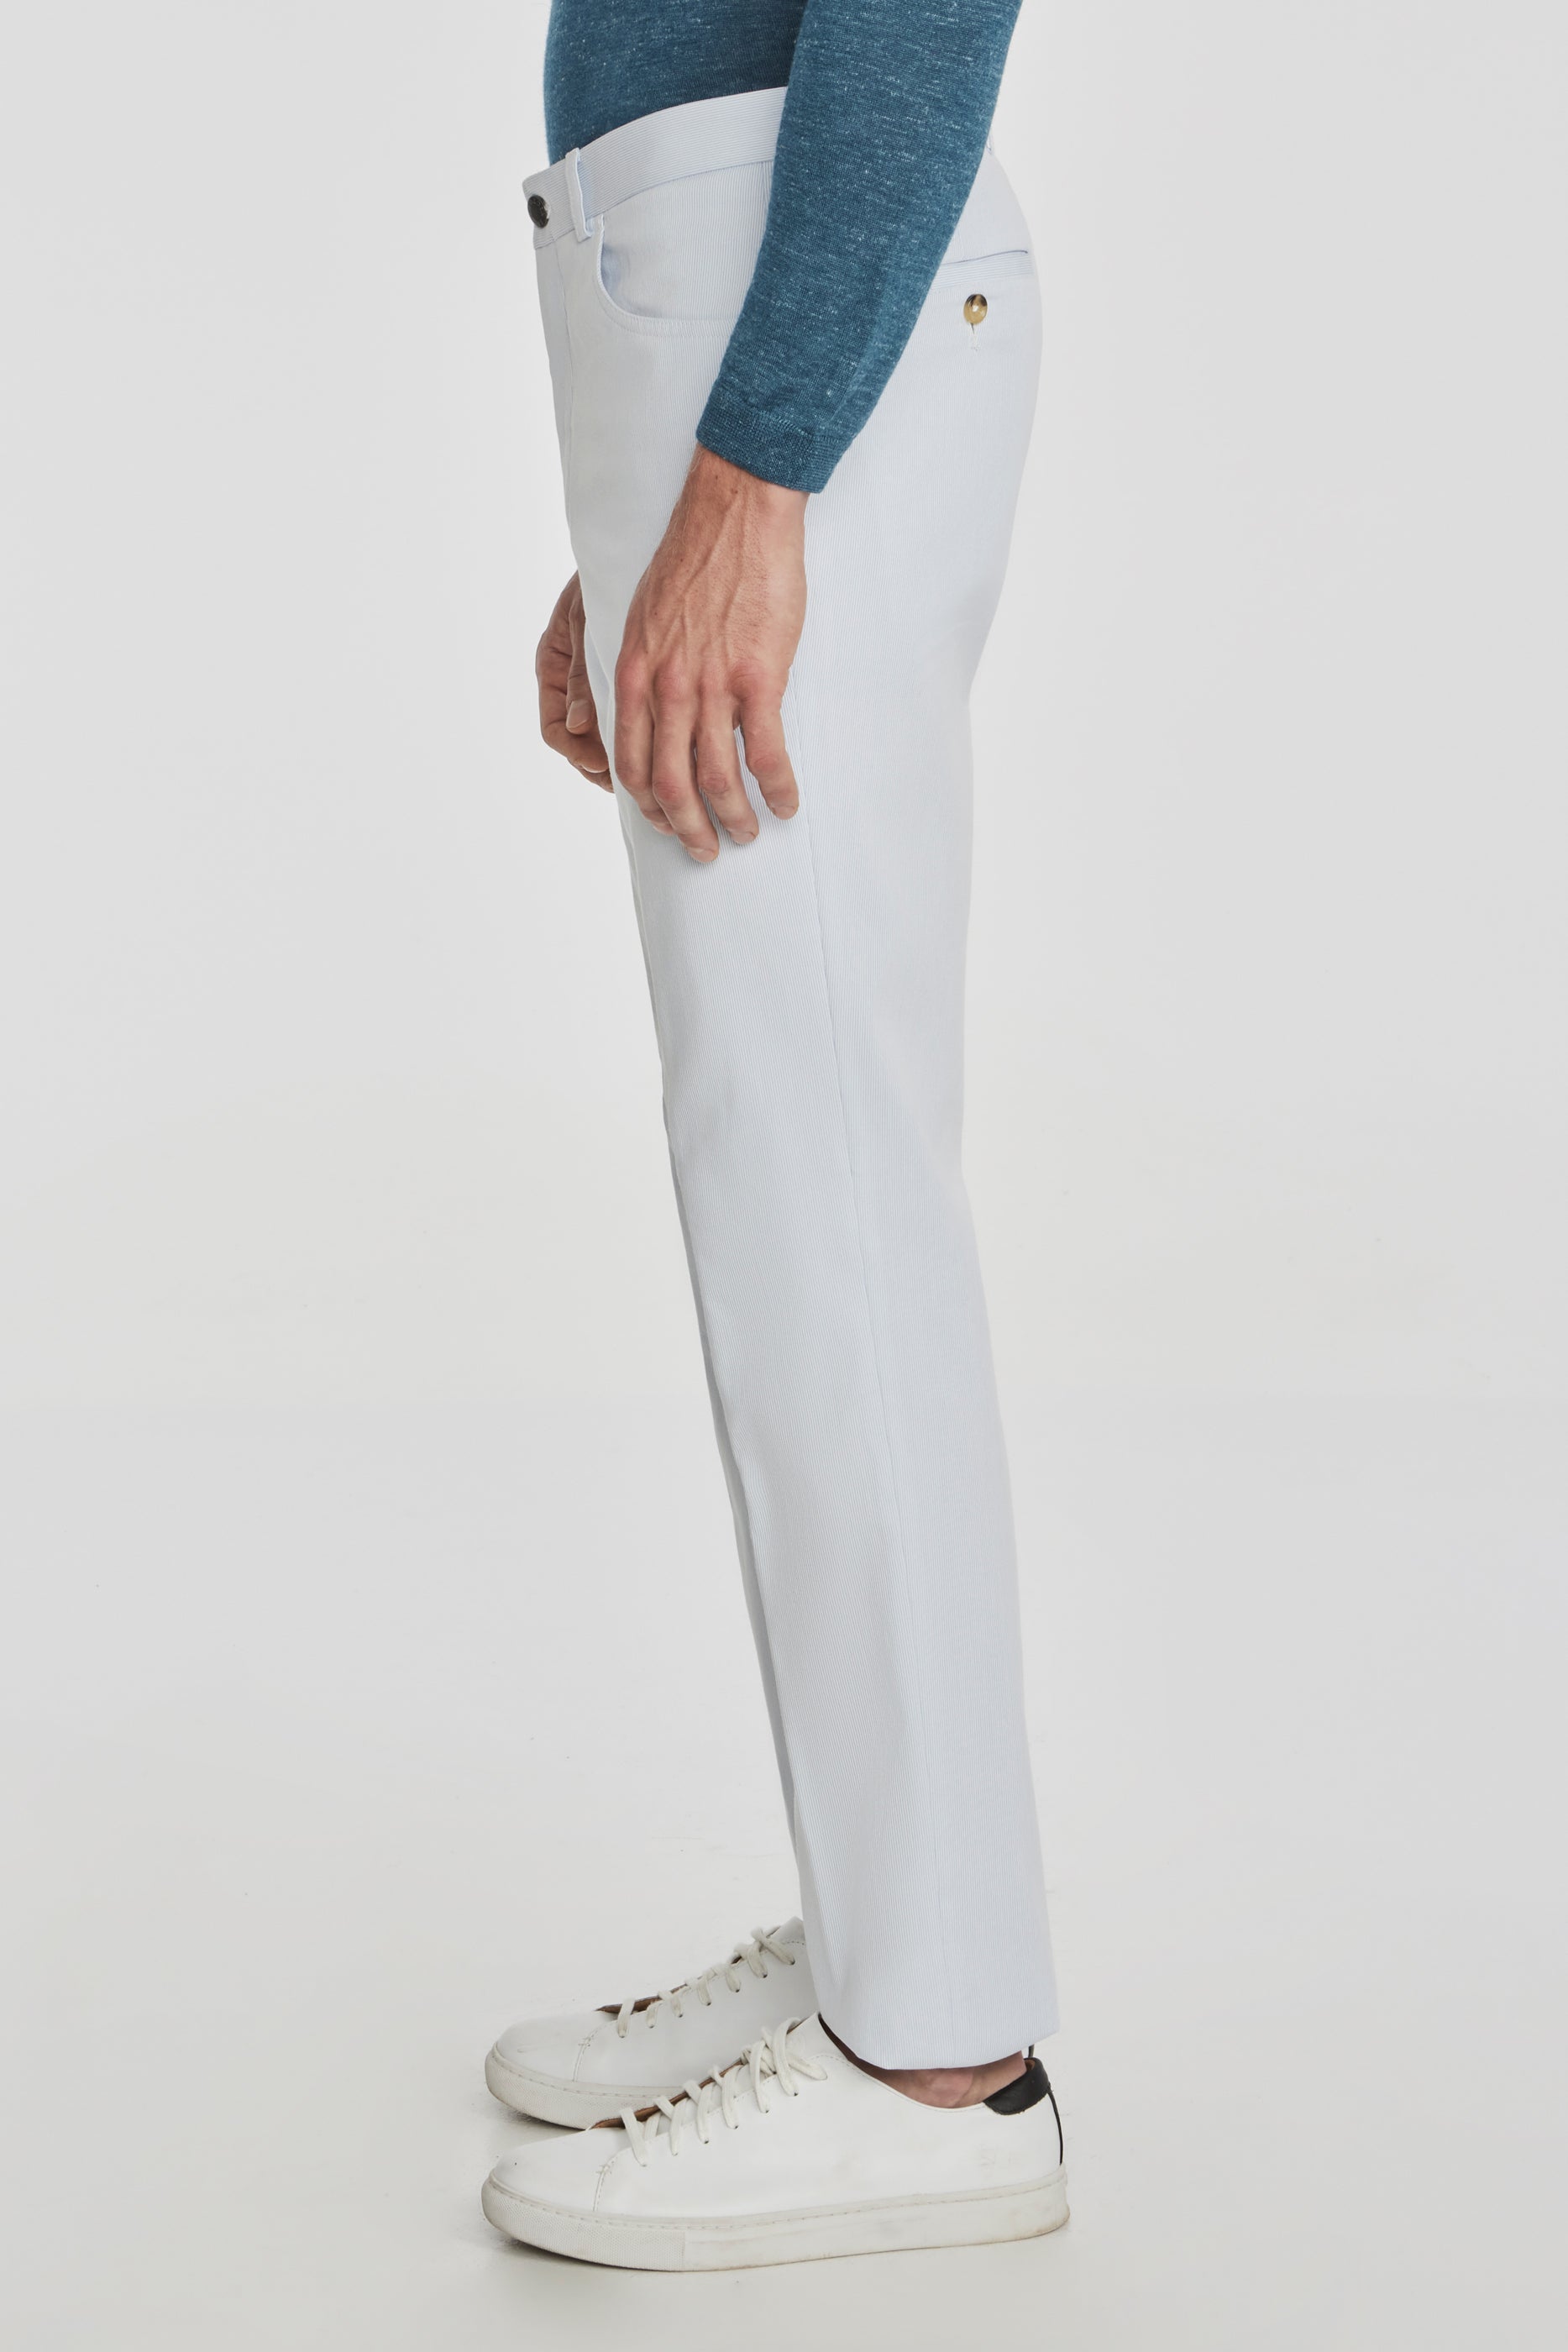 Vue alternative 3 Pantalon bleu clair en plumes d'épingle en coton extensible 5 poches Sage